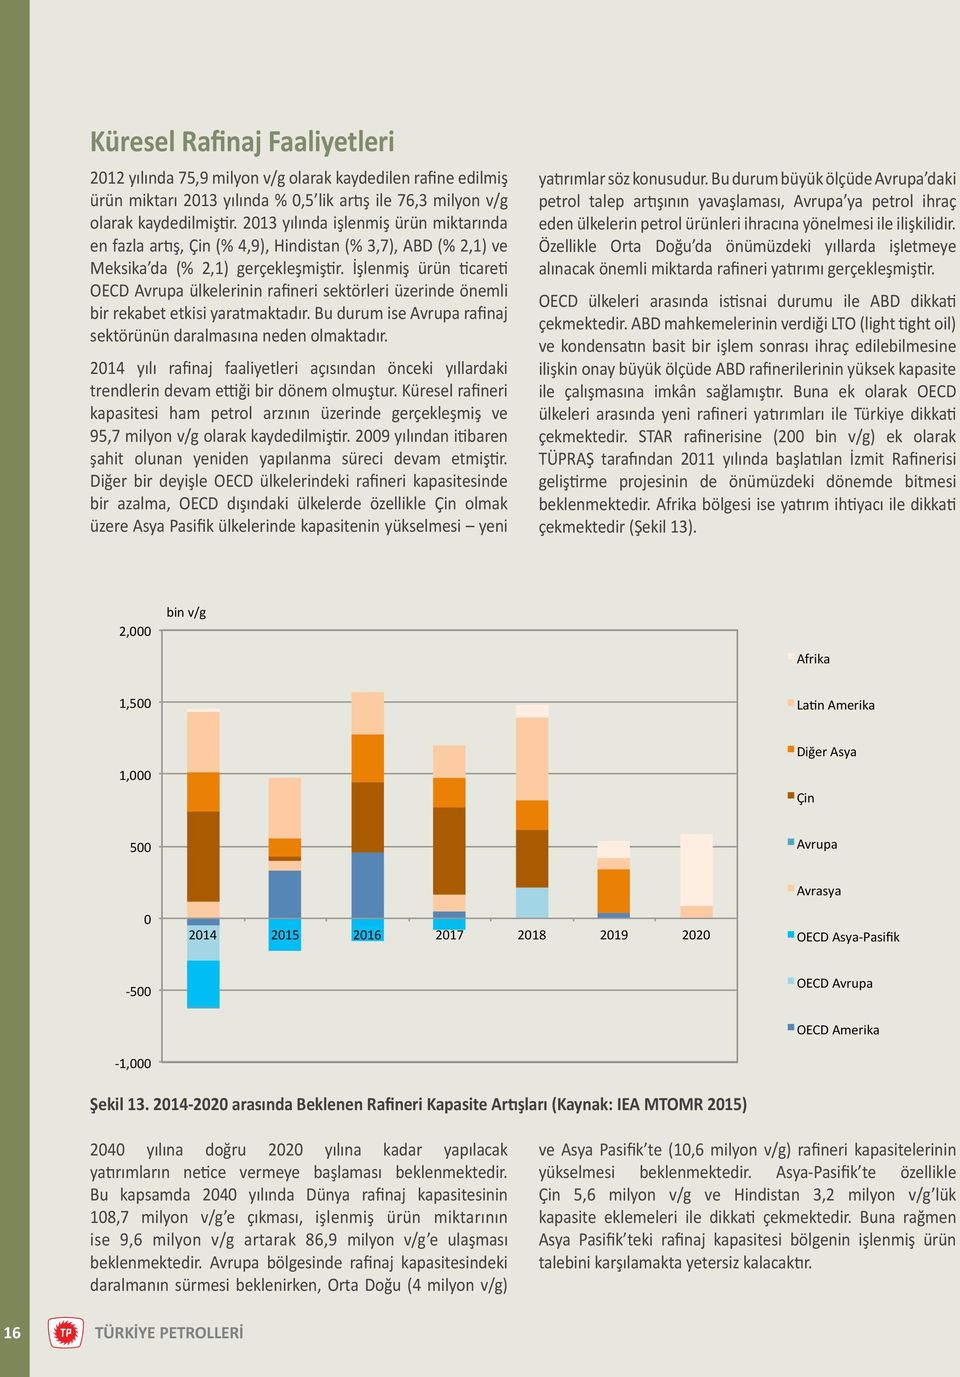 İşlenmiş ürün ticareti OECD Avrupa ülkelerinin rafineri sektörleri üzerinde önemli bir rekabet etkisi yaratmaktadır. Bu durum ise Avrupa rafinaj sektörünün daralmasına neden olmaktadır.